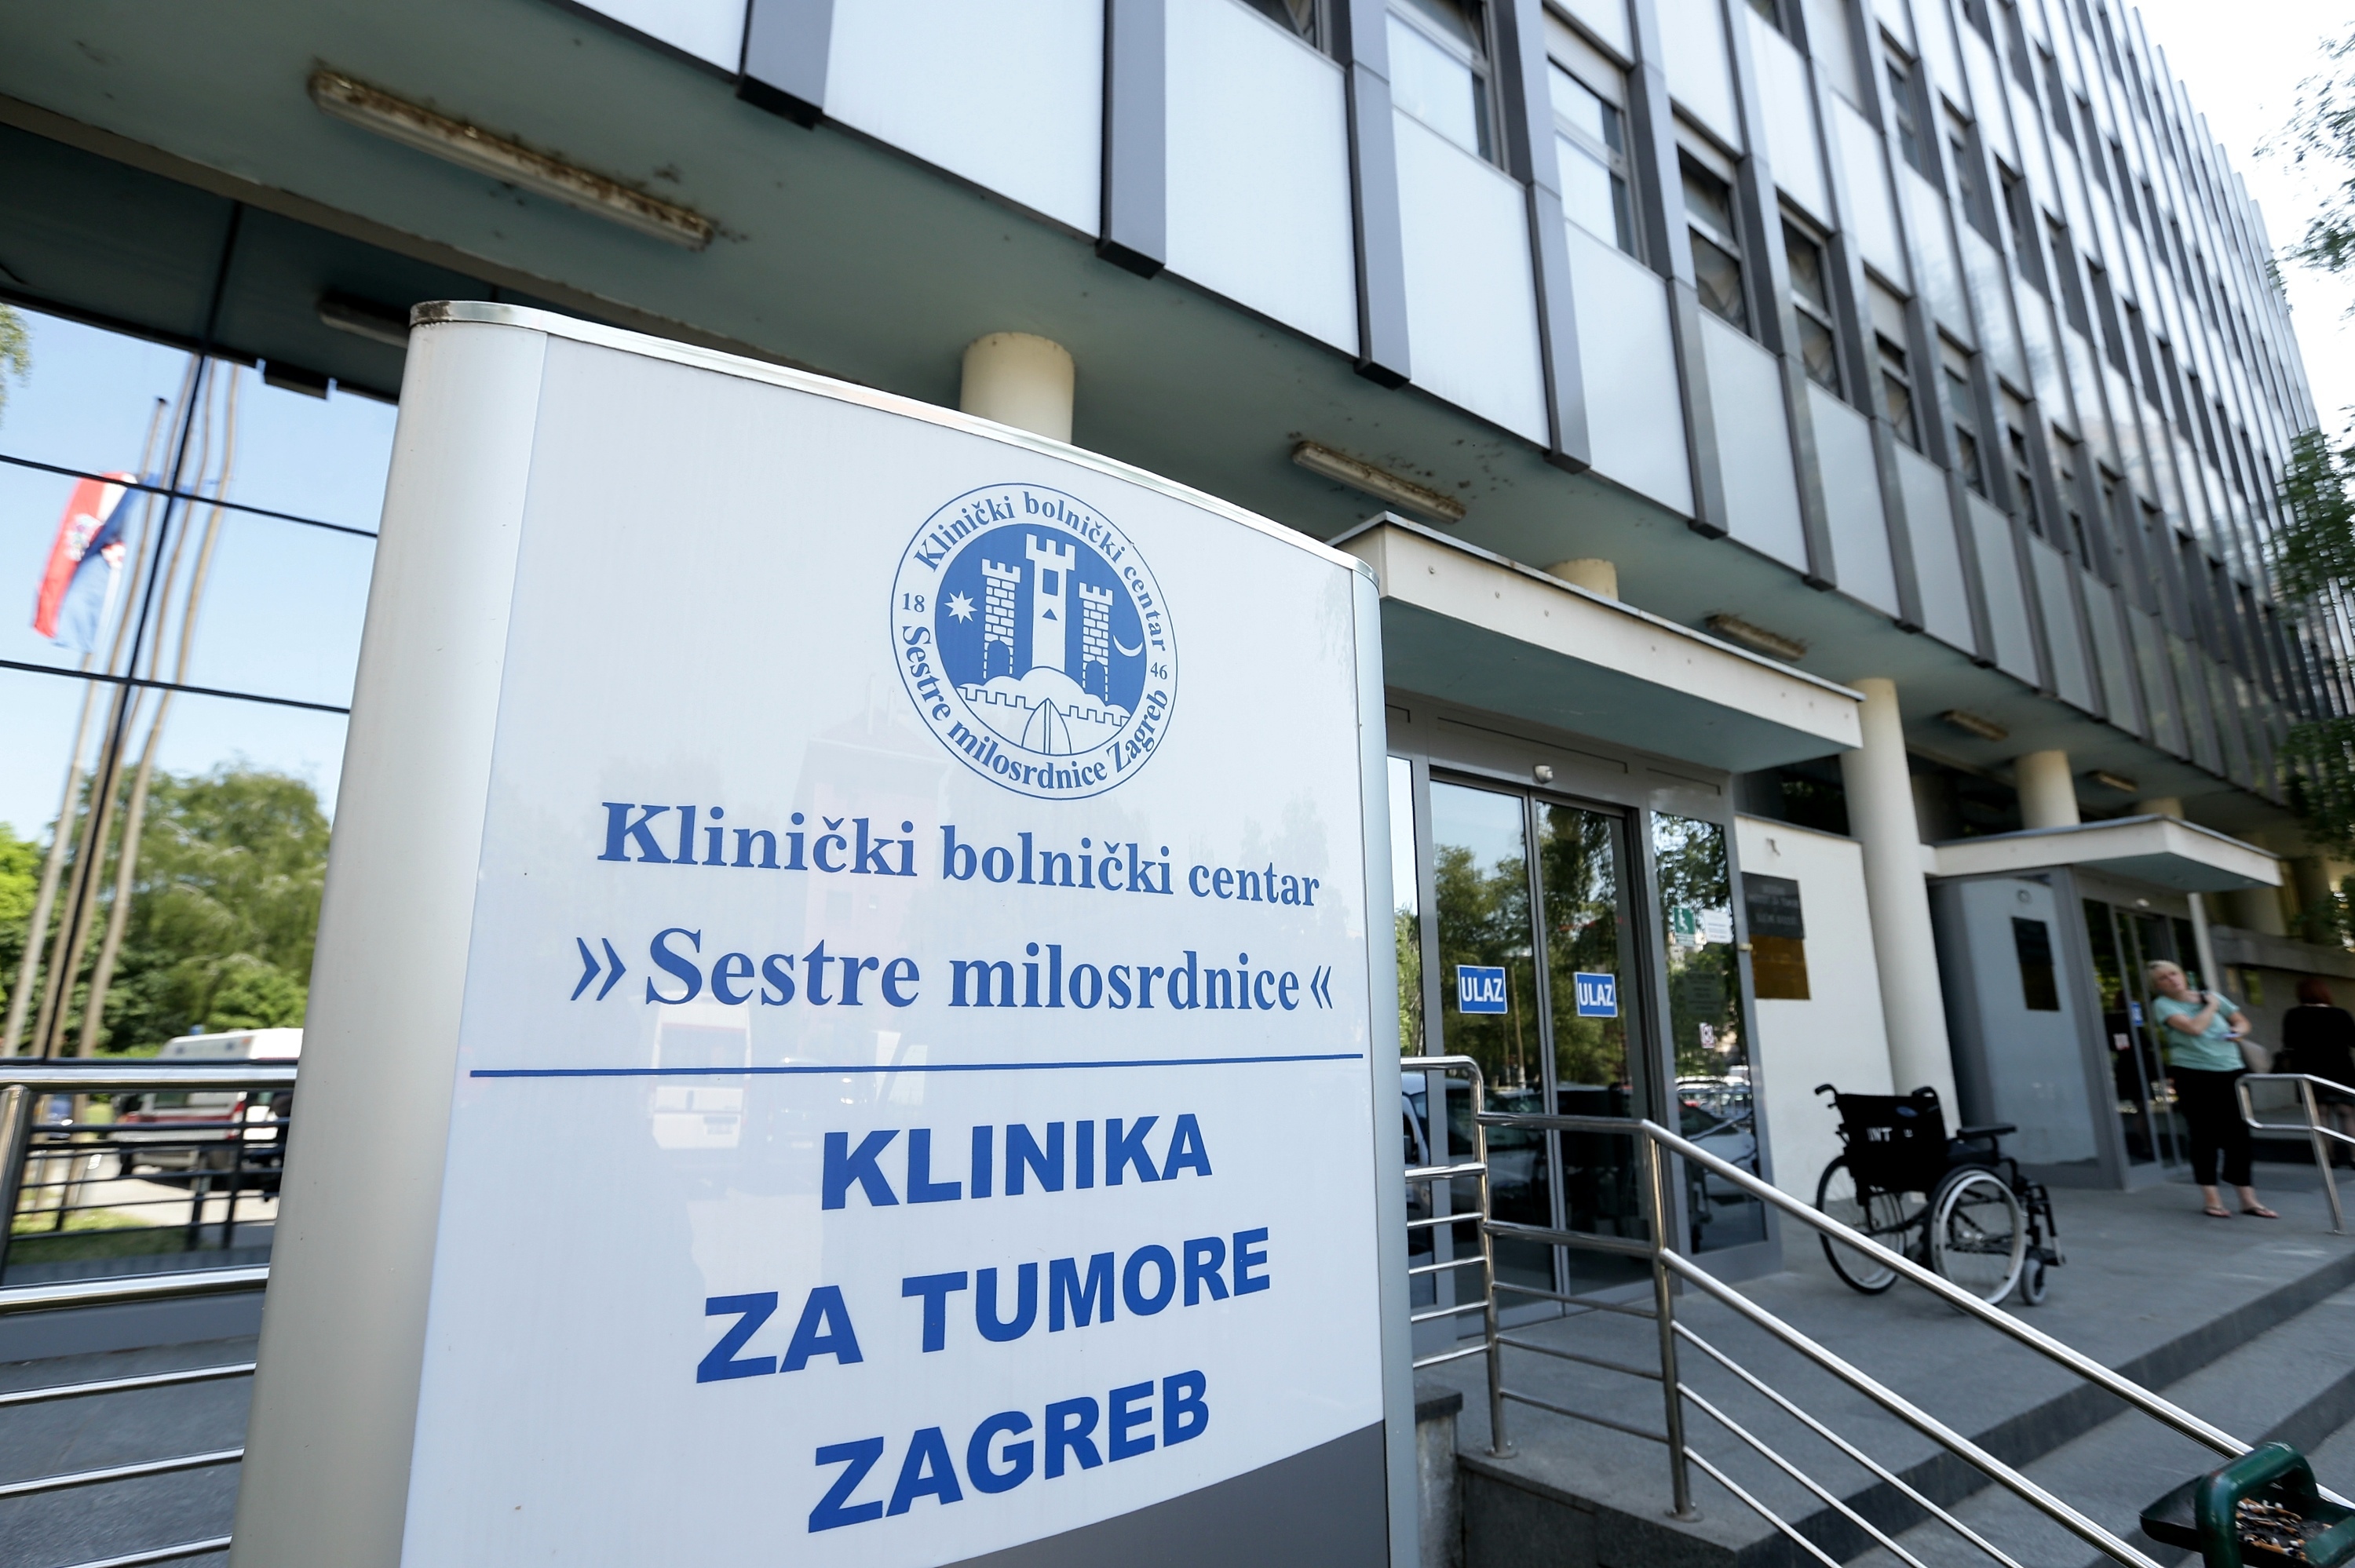 08.05.2015., Zagreb - Klinicki bolnicki centar Sestre milosrdnice, Klinika za tumore Zagreb. 
Photo: Zeljko Lukunic/PIXSELL